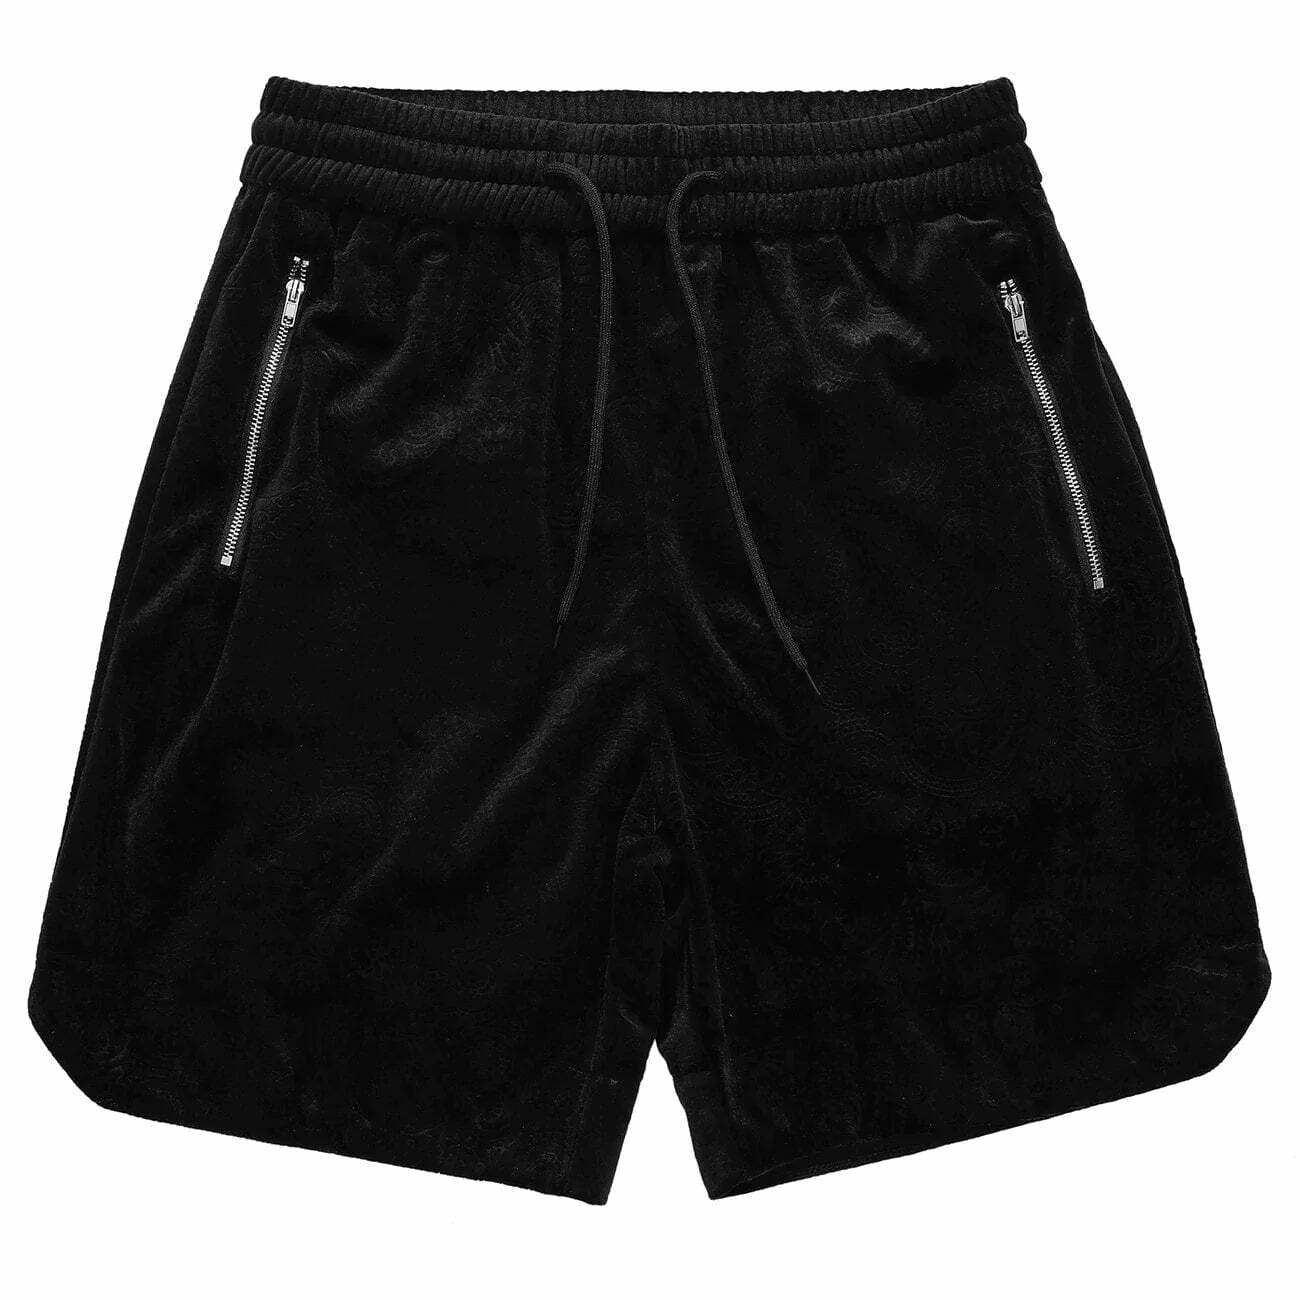 zipper detail cargo shorts edgy y2k streetwear 3868